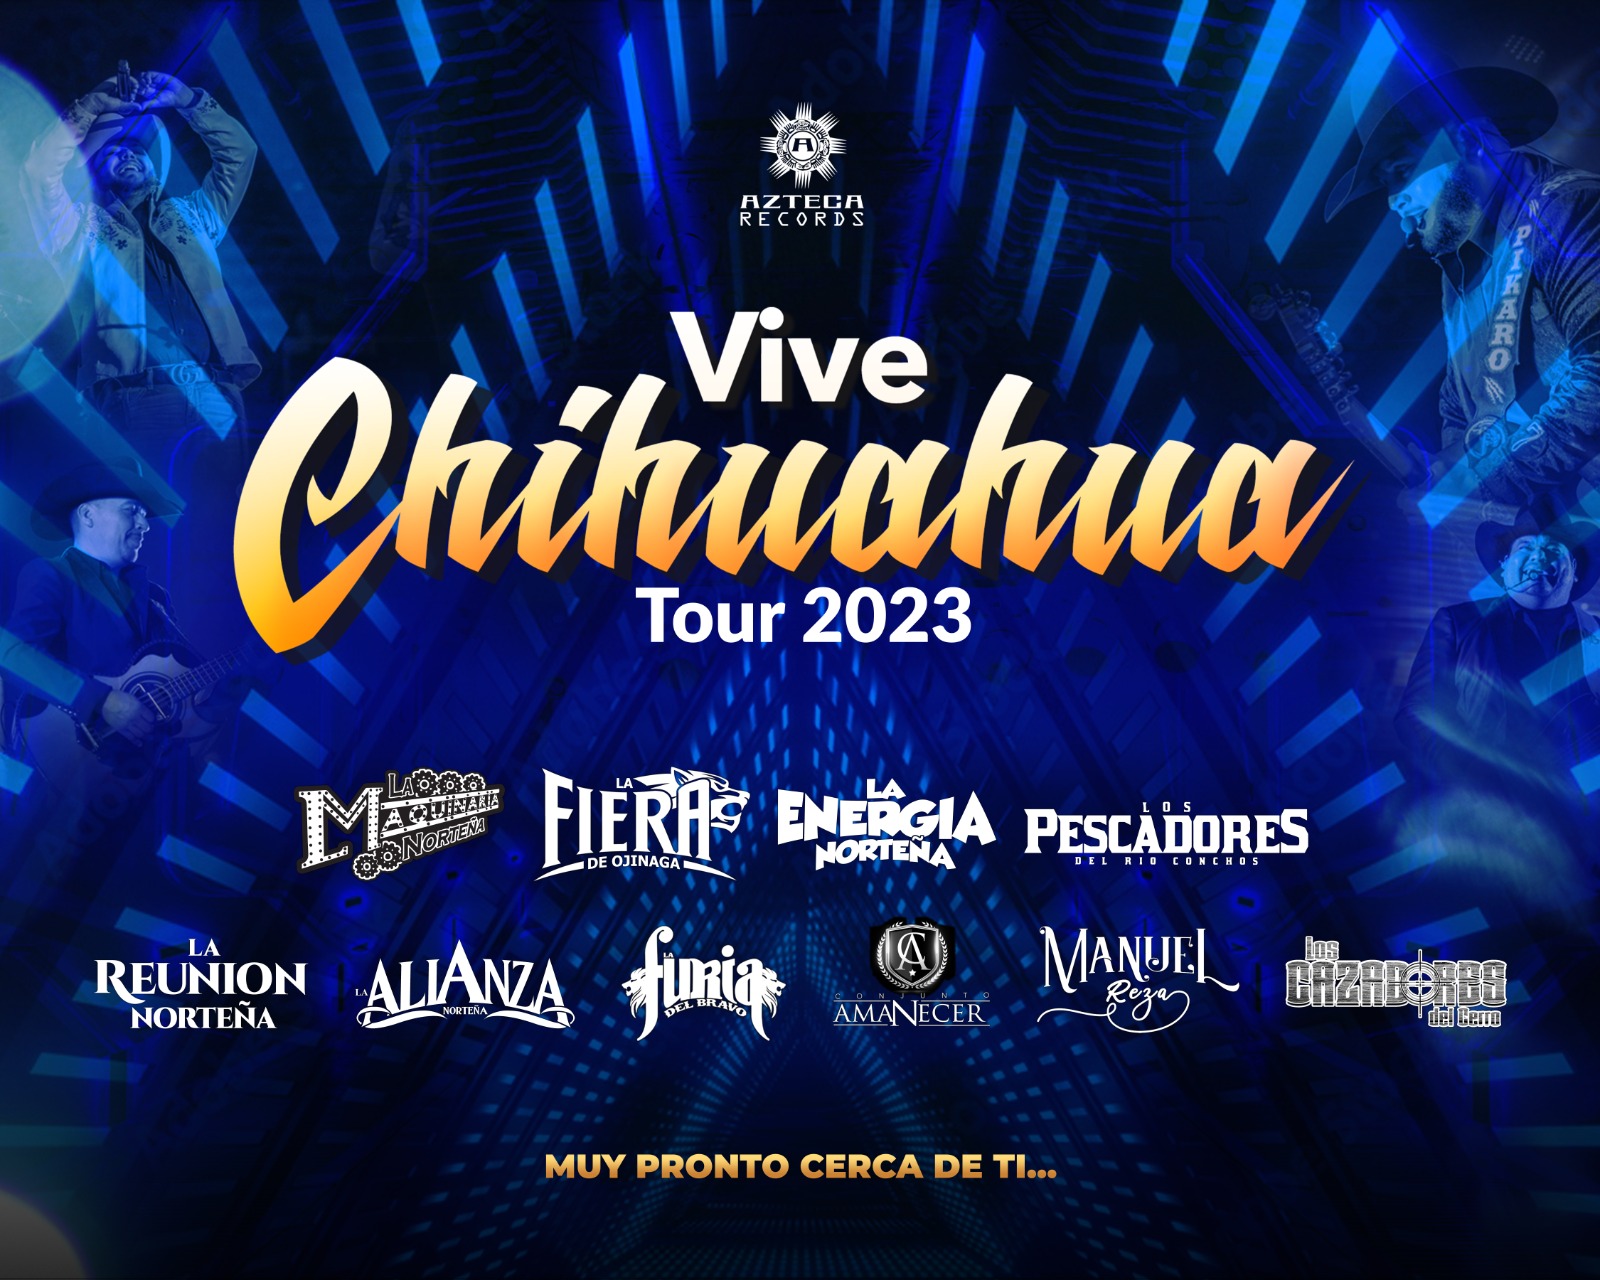 VIVE CHIHUAHUA FESTIVAL! Vive Chihuahua Fest